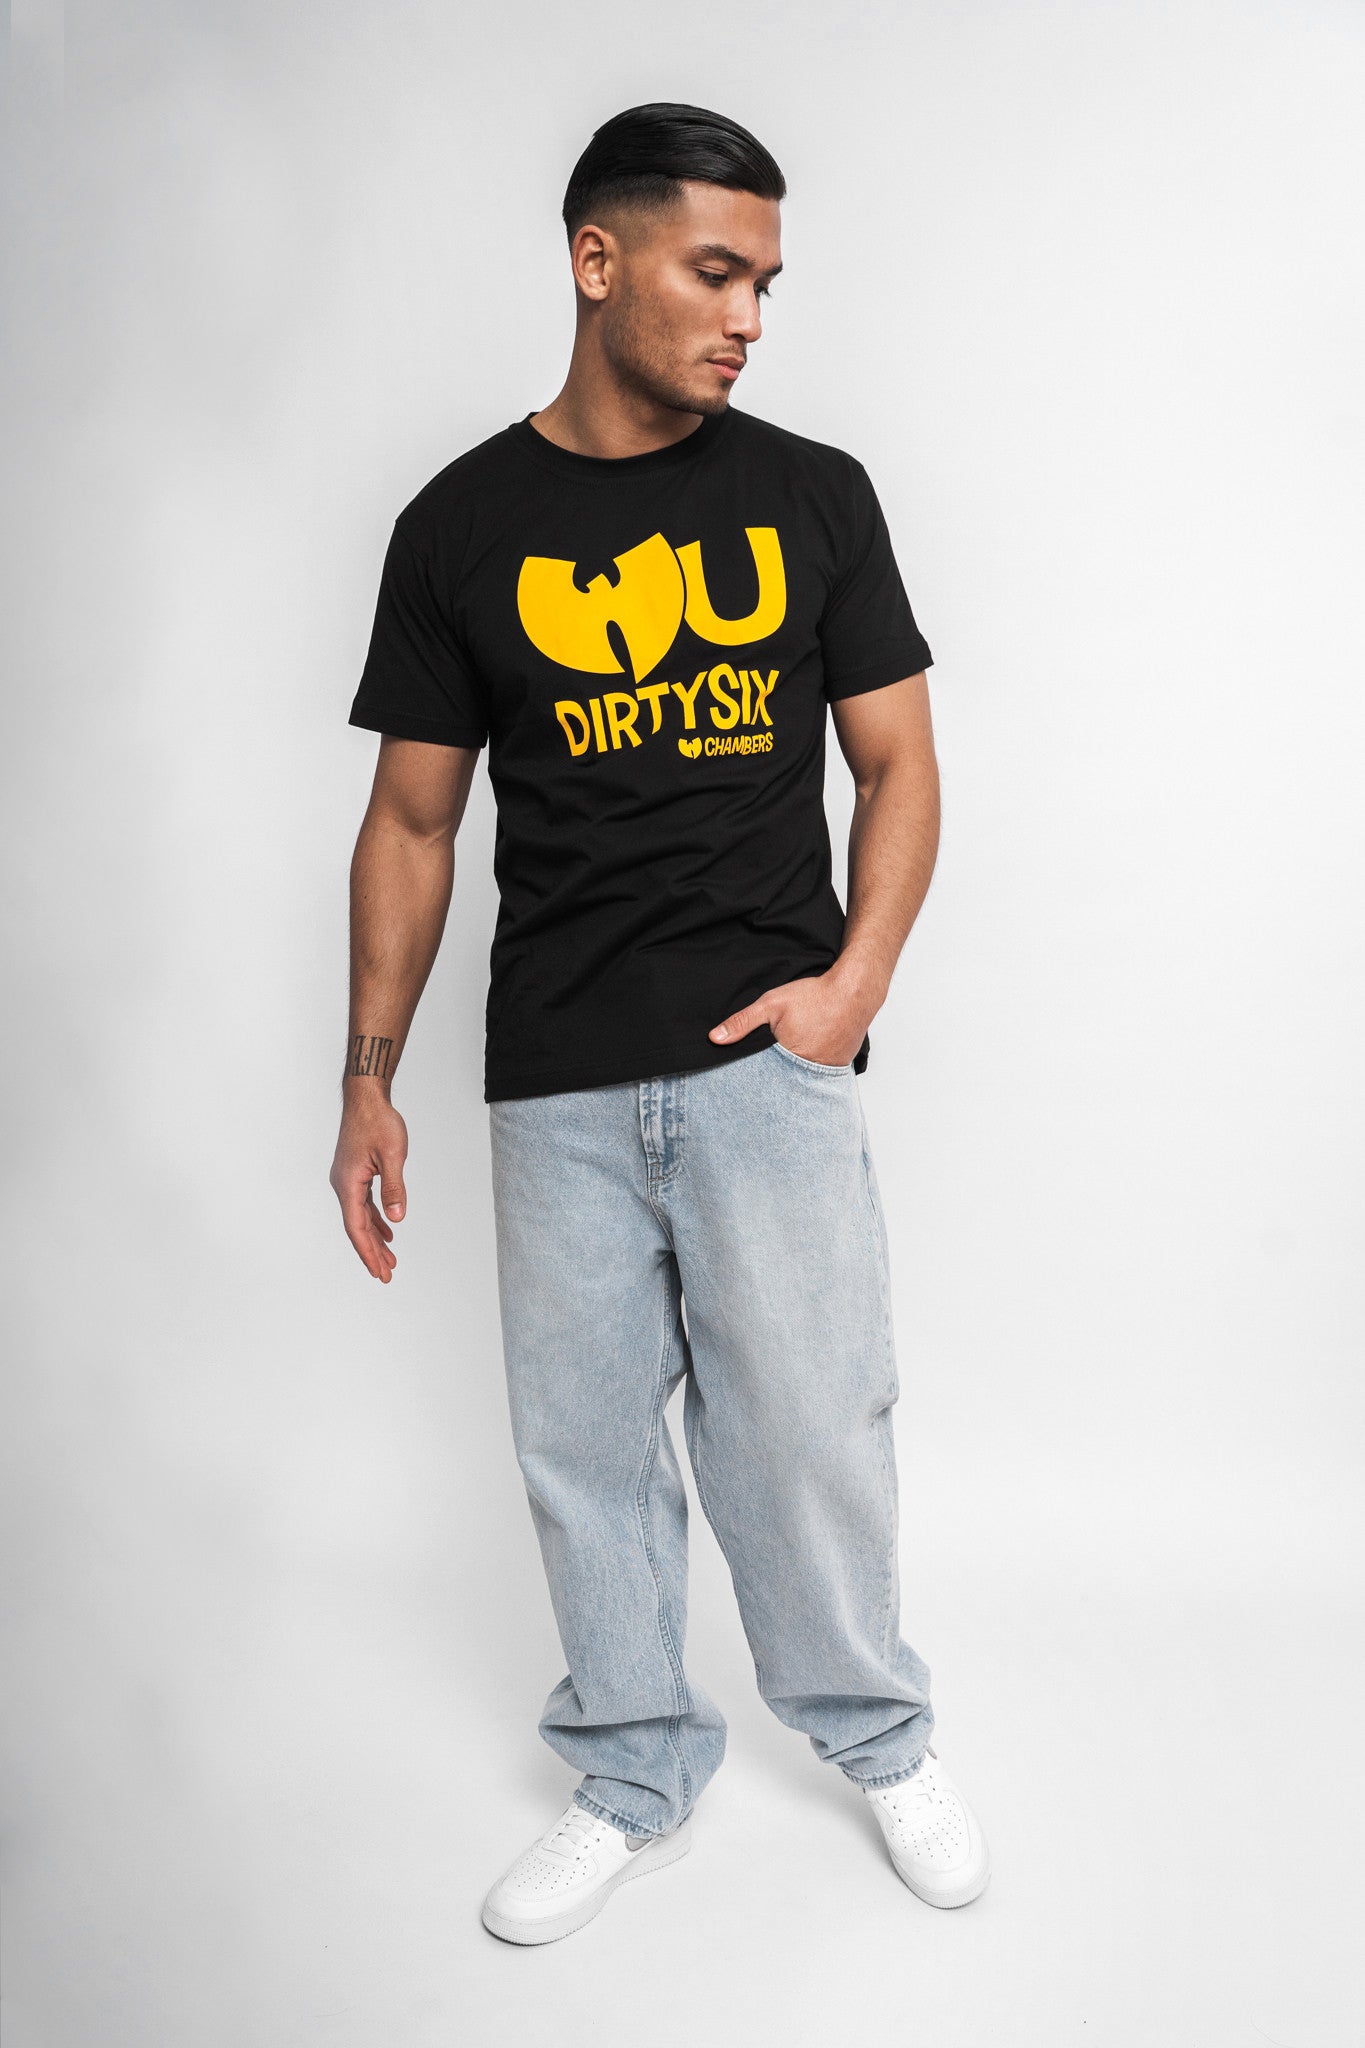 WU-WEAR - Dirty Six T-Shirt - Wu-Tang Clan